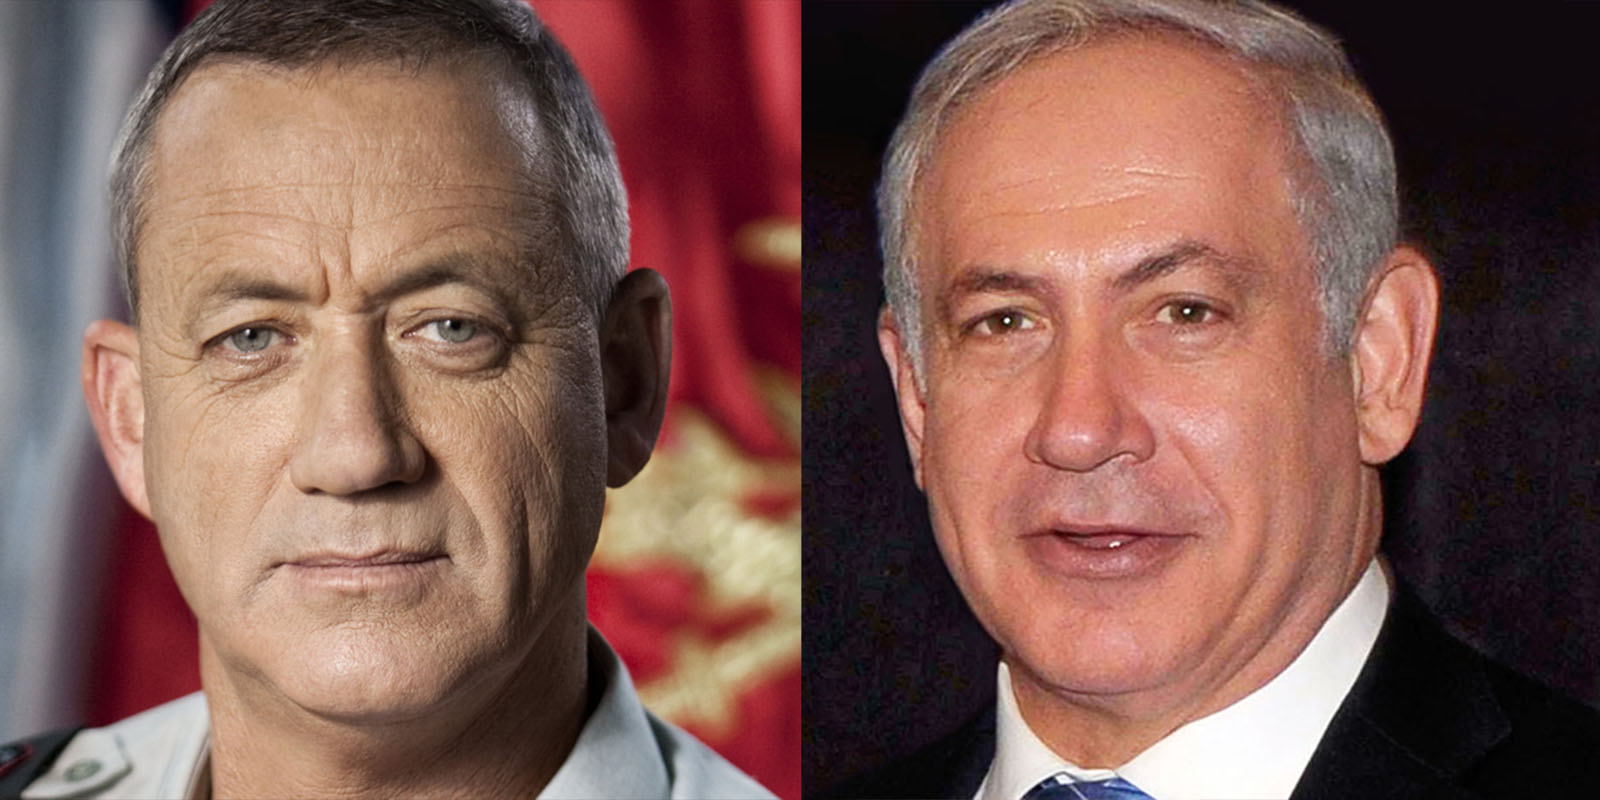 Netanyahu agus Gantz gob ar ghob sa toghchán